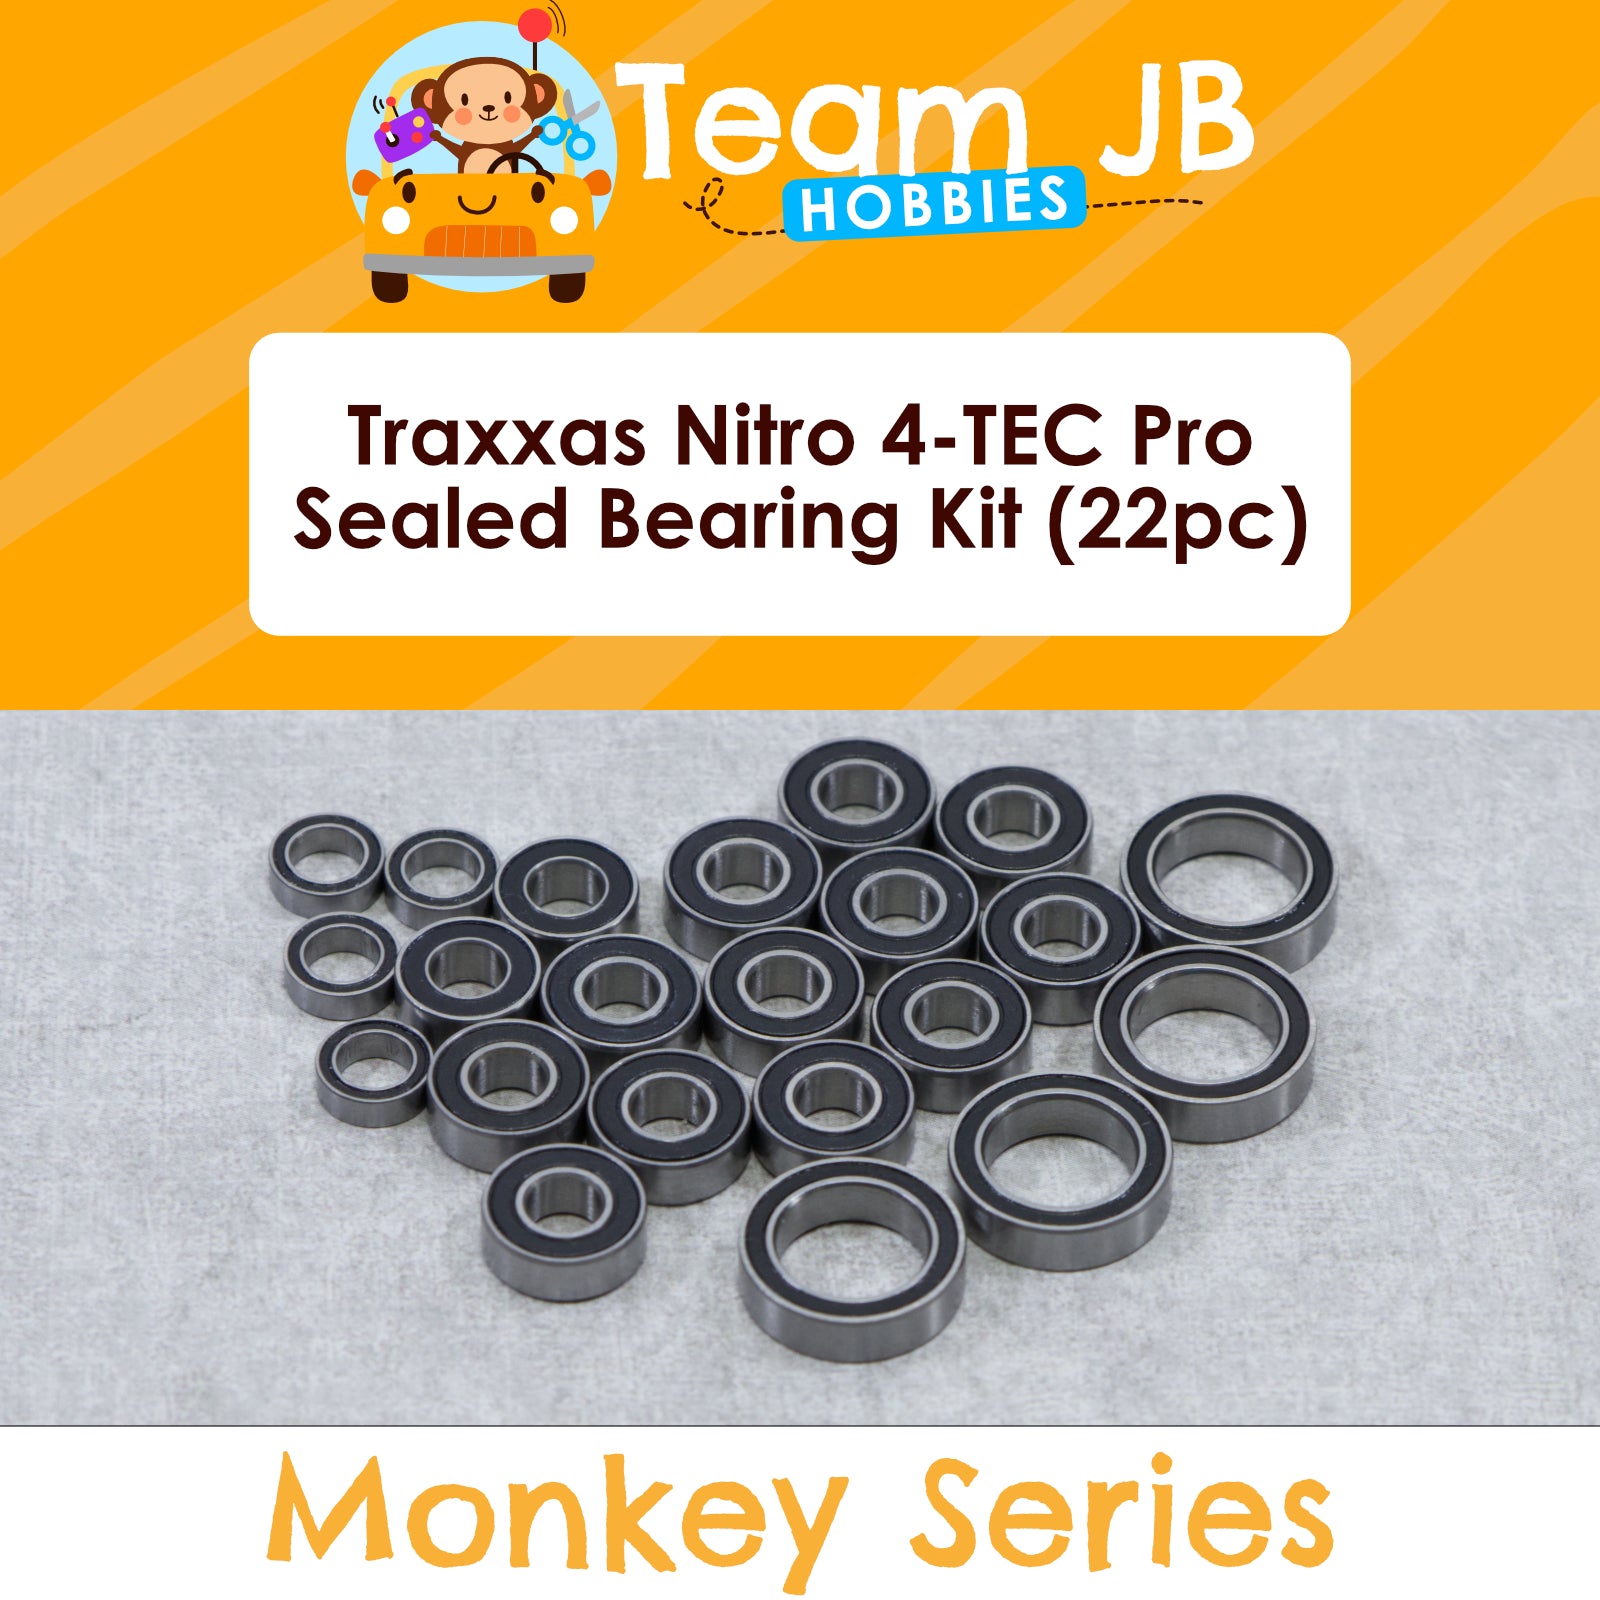 Traxxas Nitro 4-TEC Pro - Sealed Bearing Kit